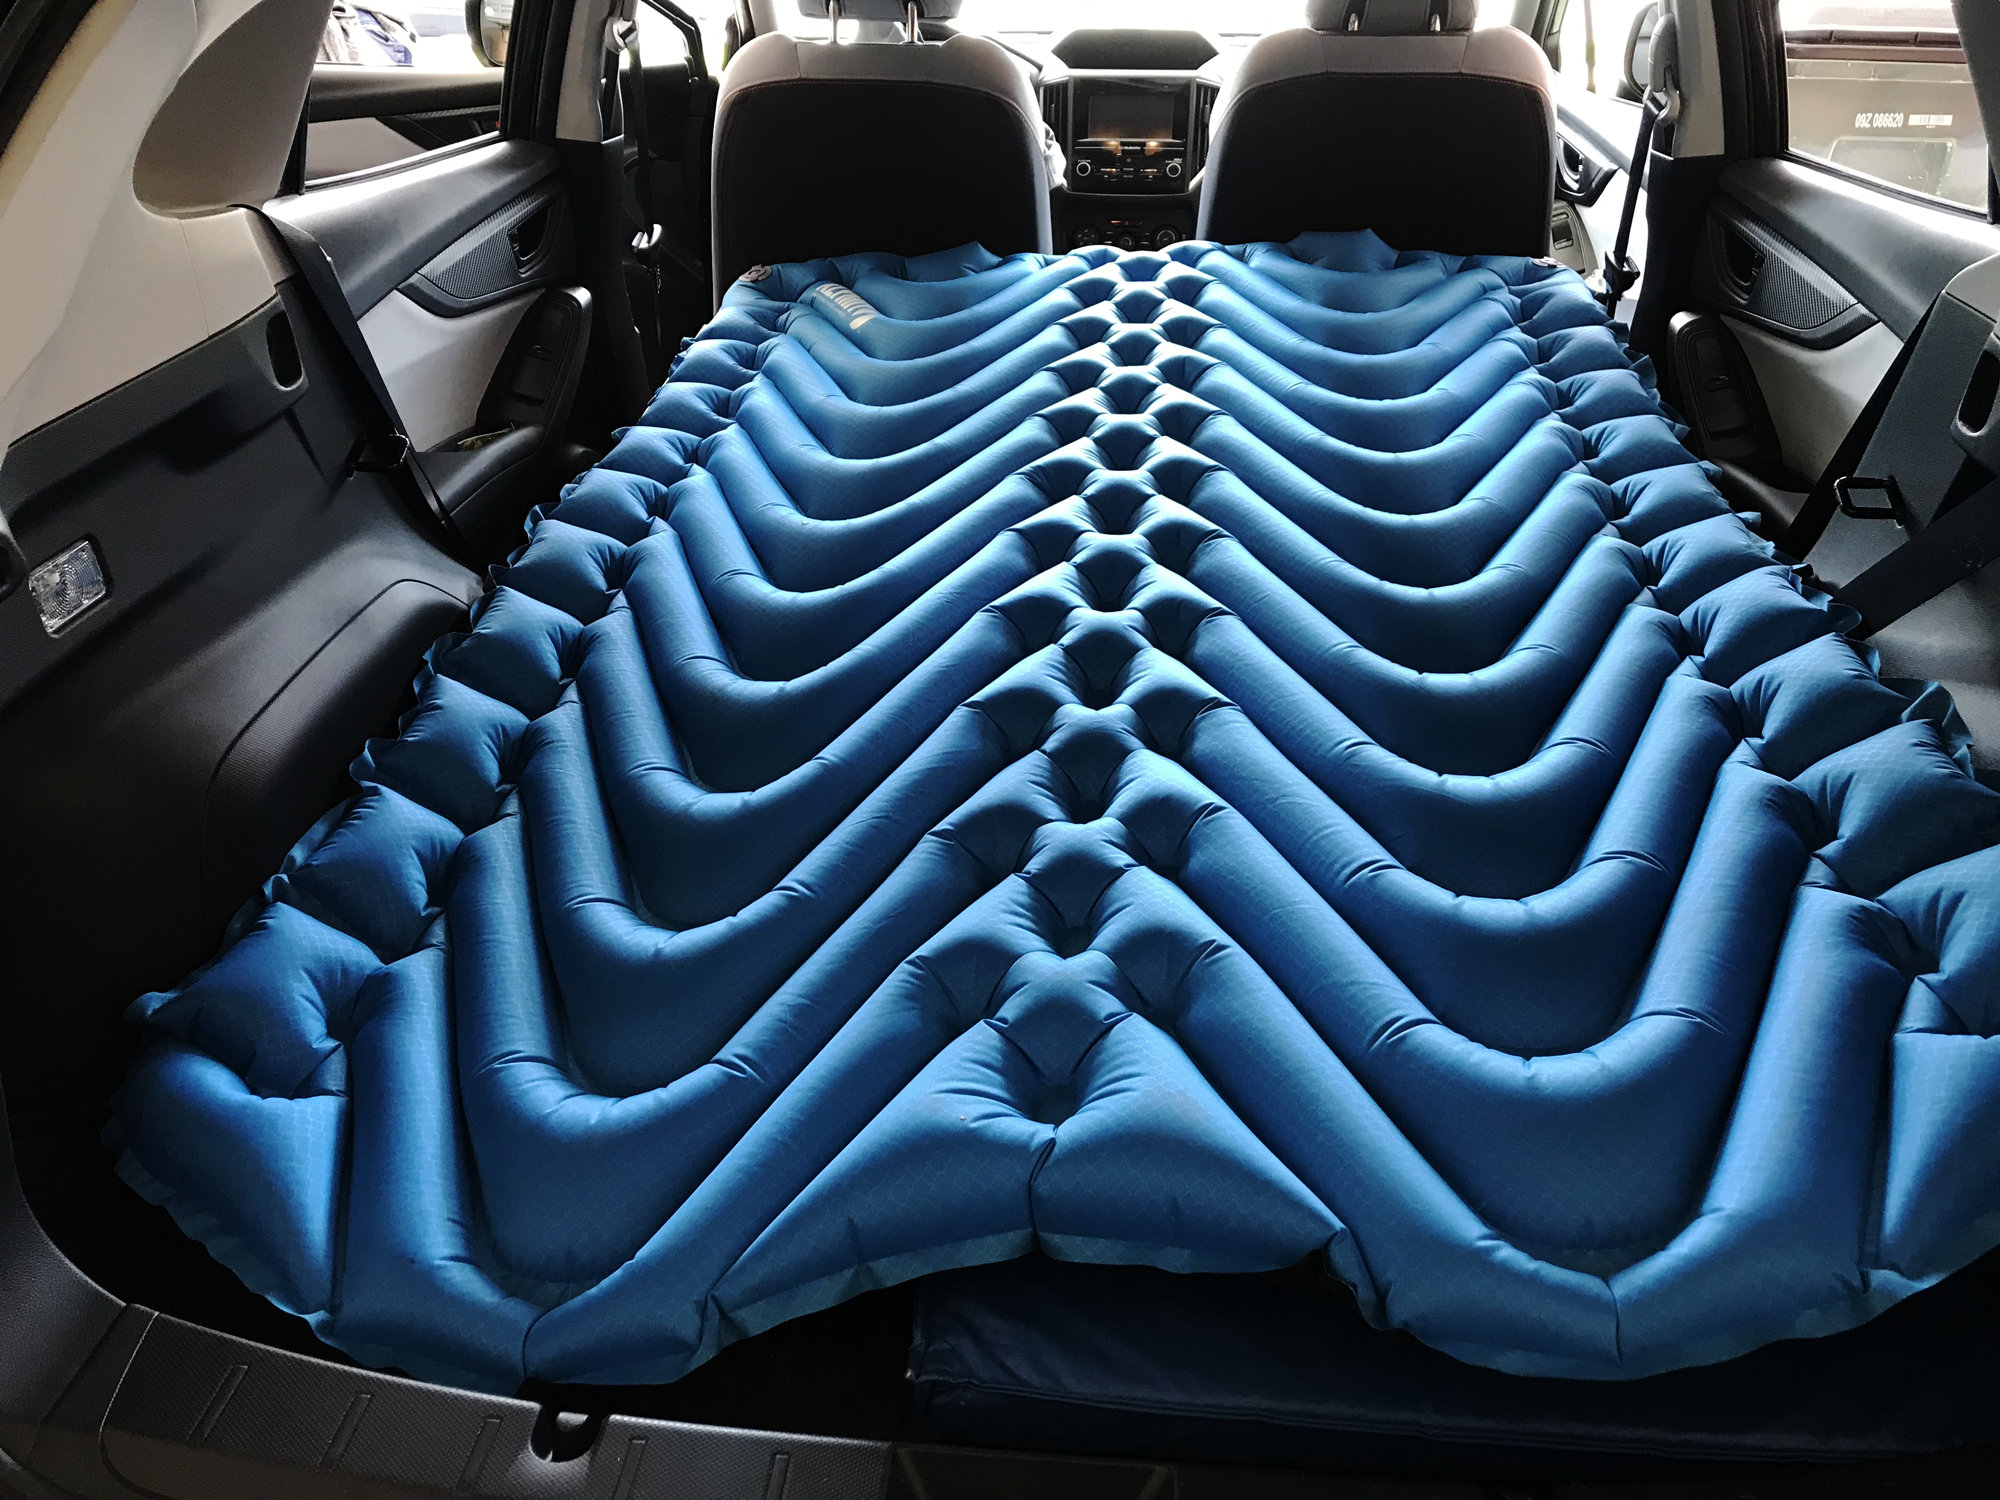 Car camping in a Subaru Crosstrek – Crosstreking